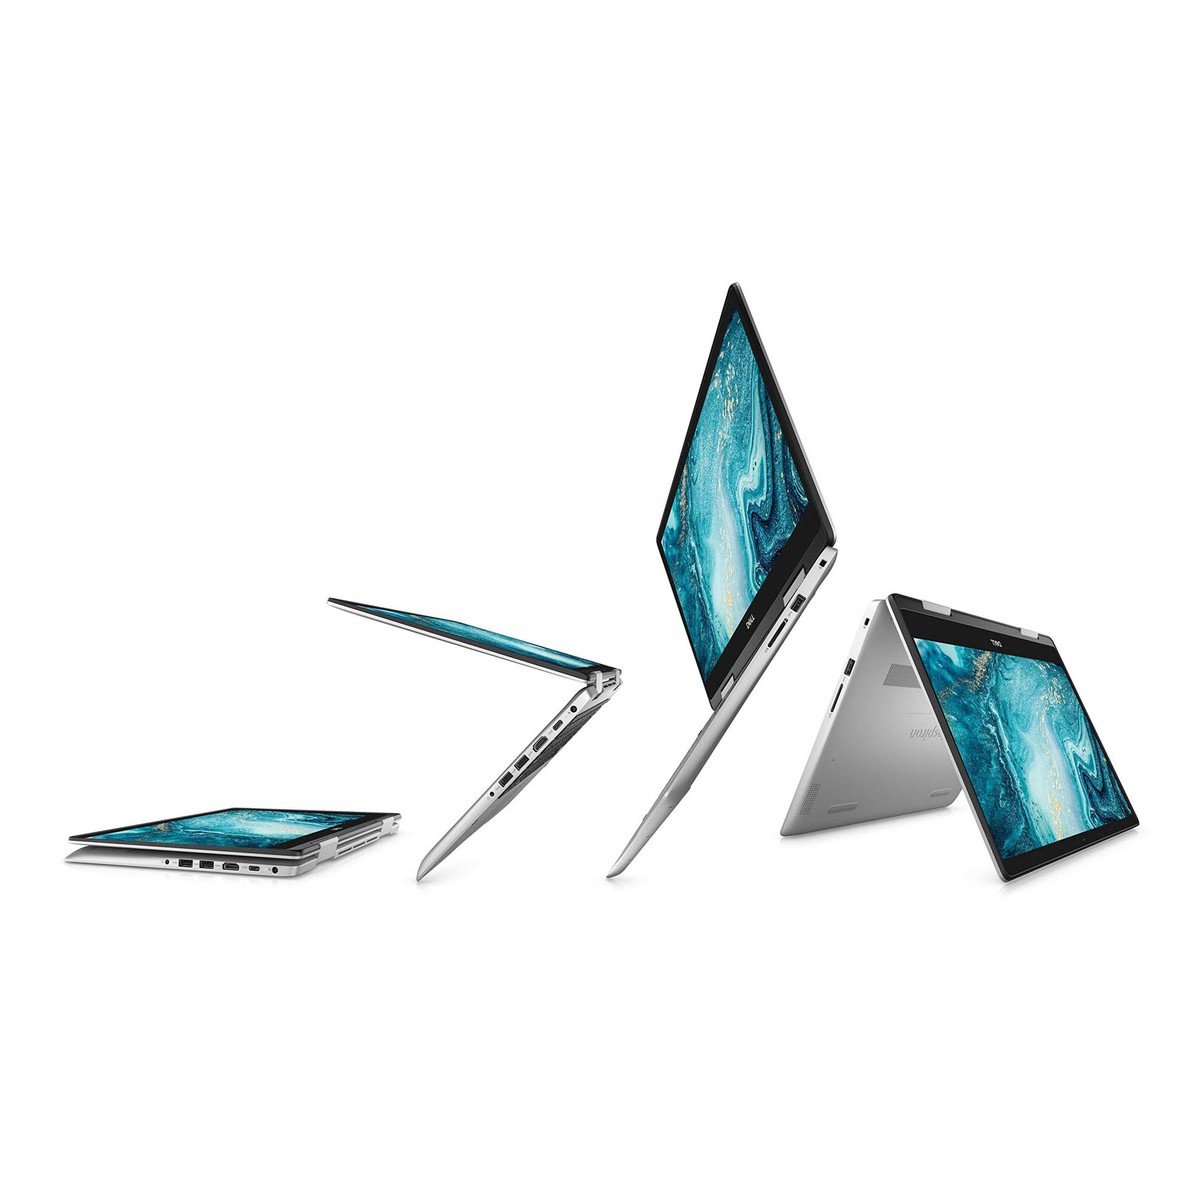 Dell 2in1 Laptop  Inspiron 14" Core i5, 10th Gen 1.6Ghz ,8GB RAM ,512GB SSD ,2GB GFX Windows 10,Silver